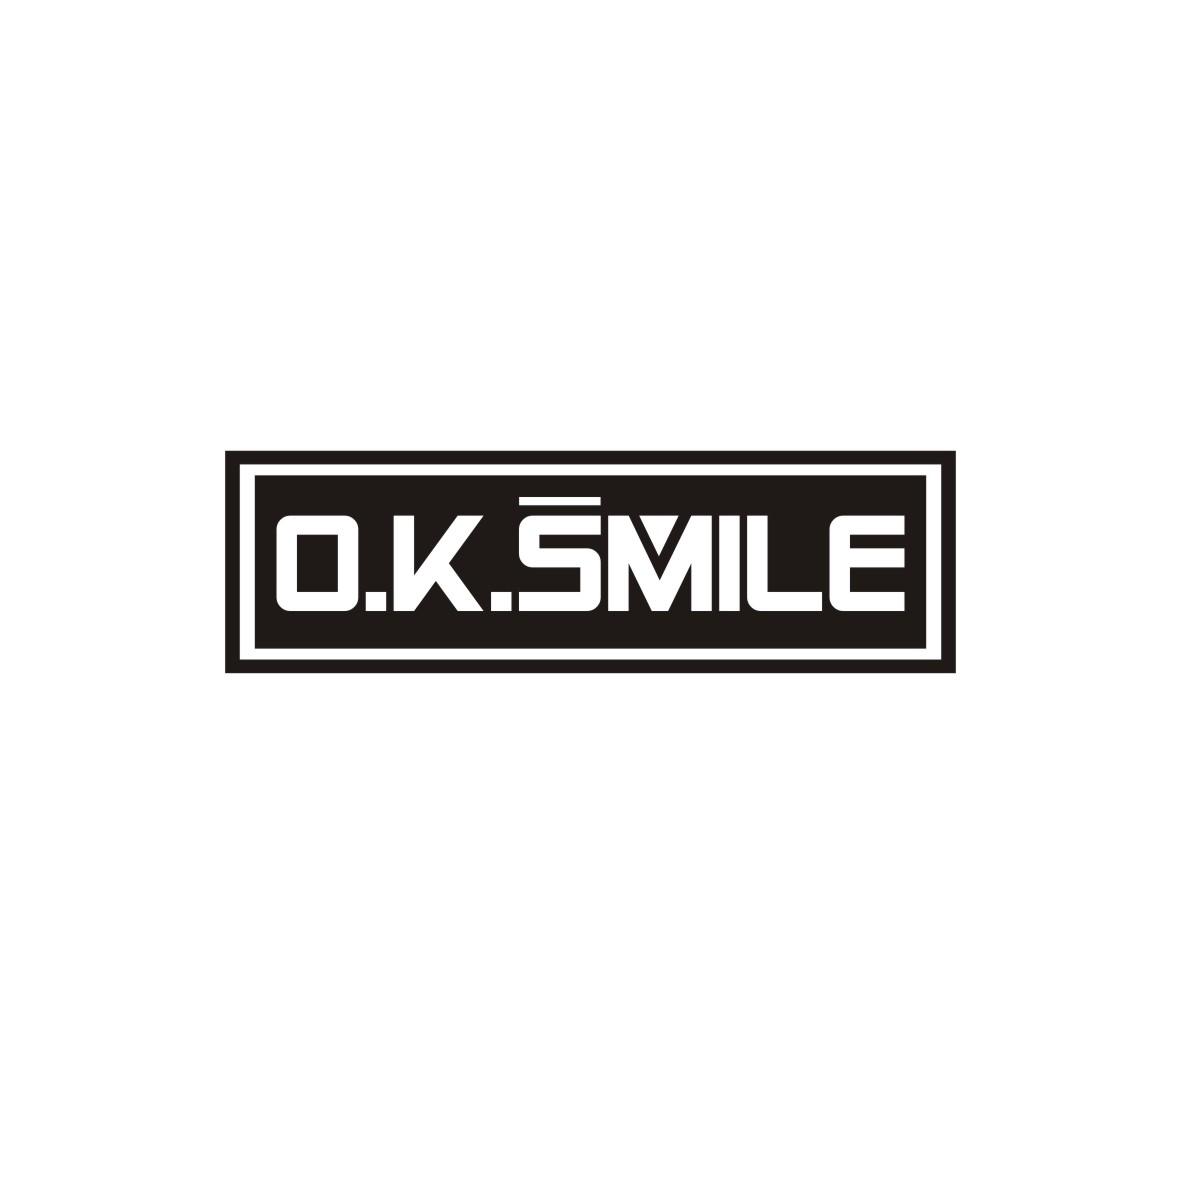 O.K.SMILE